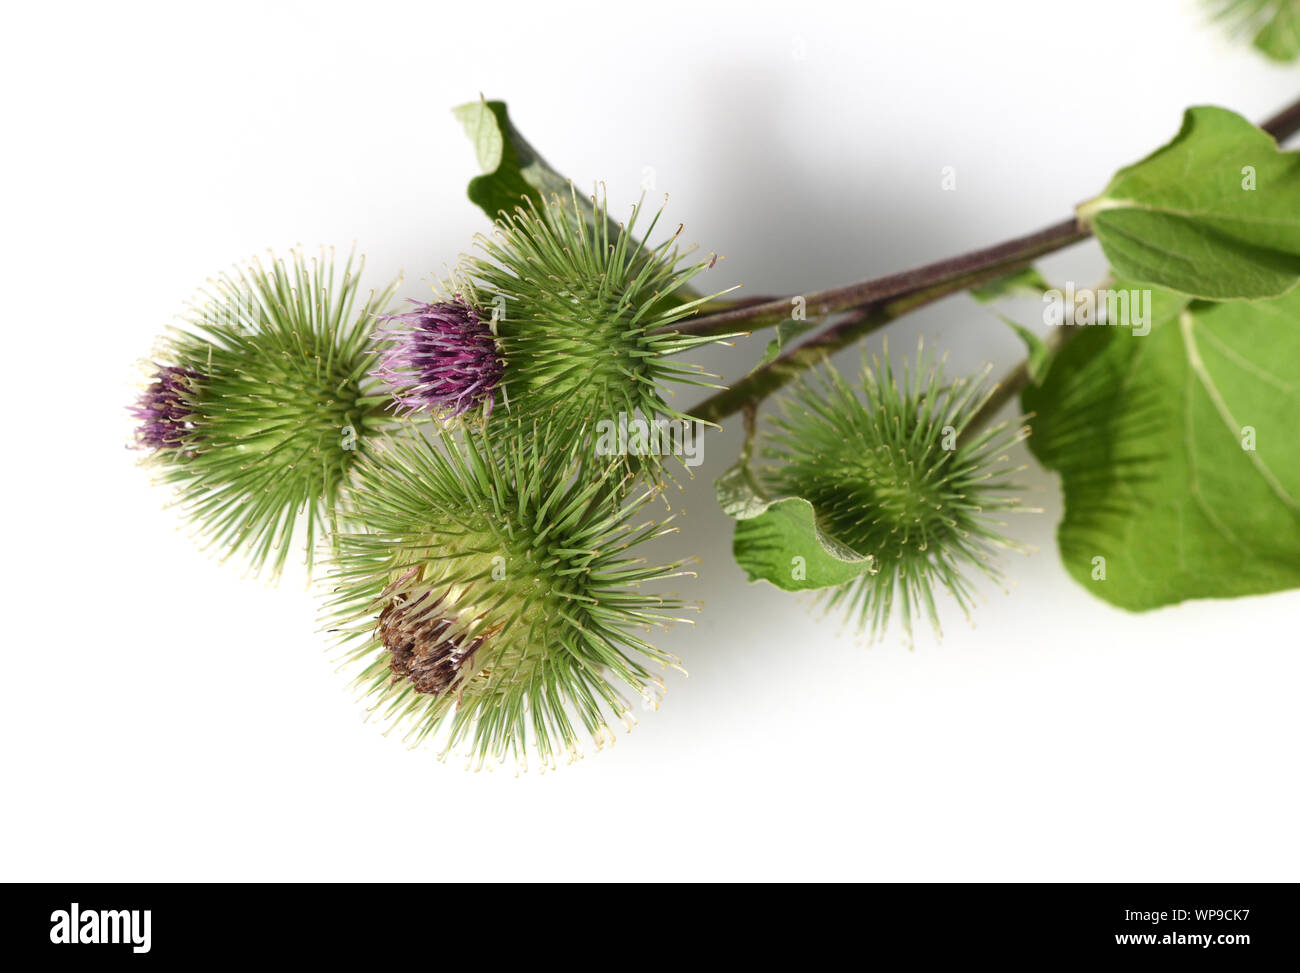 Grosse Klette, arctium, lappa, ist eine wichtige Heilpflanze mit lila Blueten und wird in der Medizin verwendet. Big burdock, arctium, lappa, is an im Stock Photo